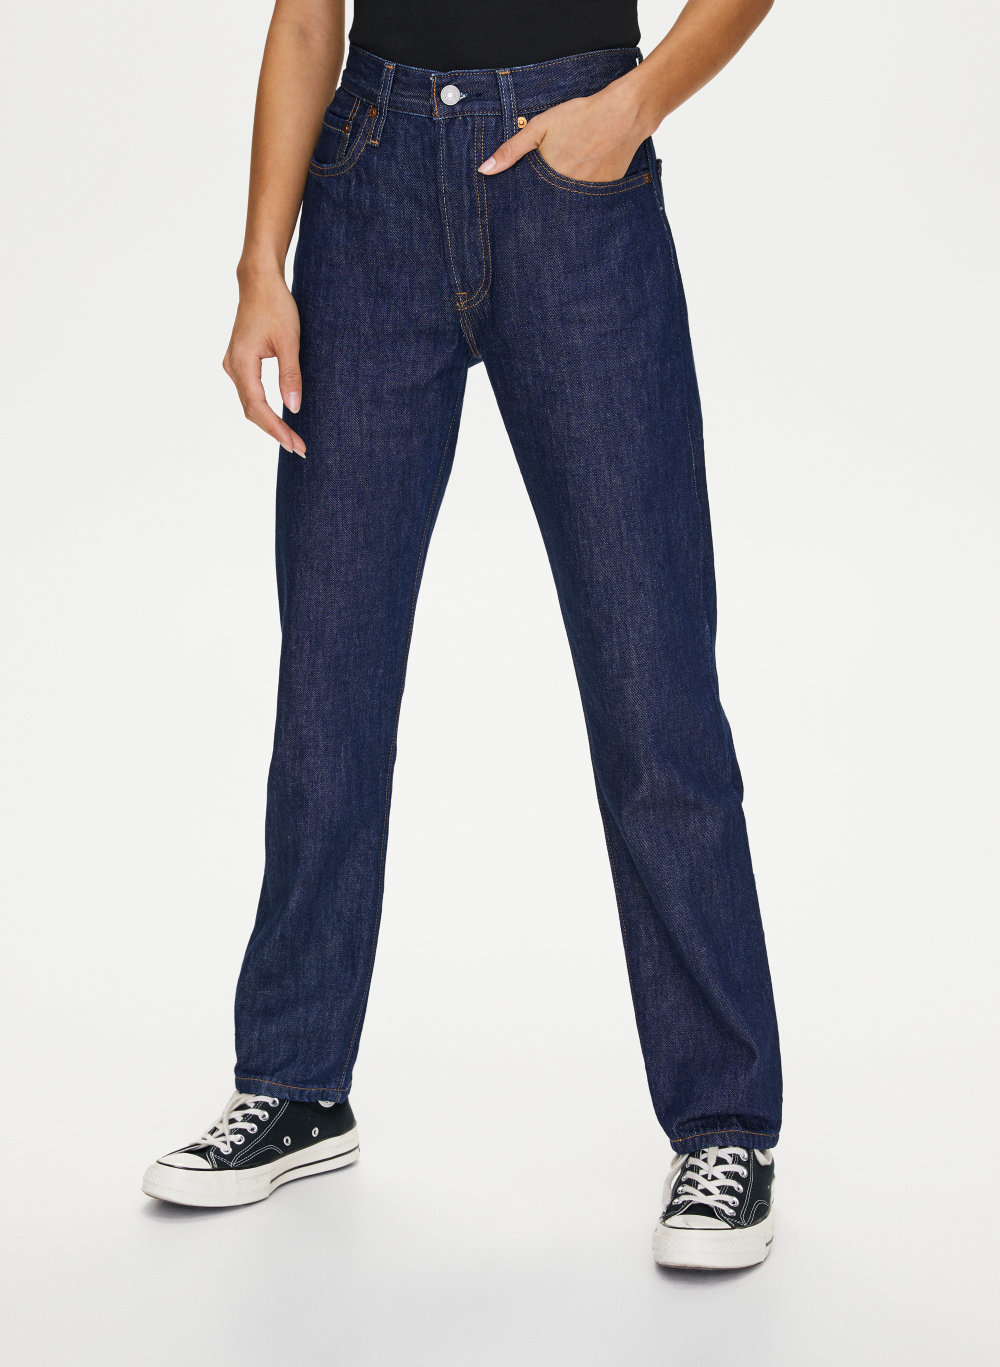 aritzia levis jeans